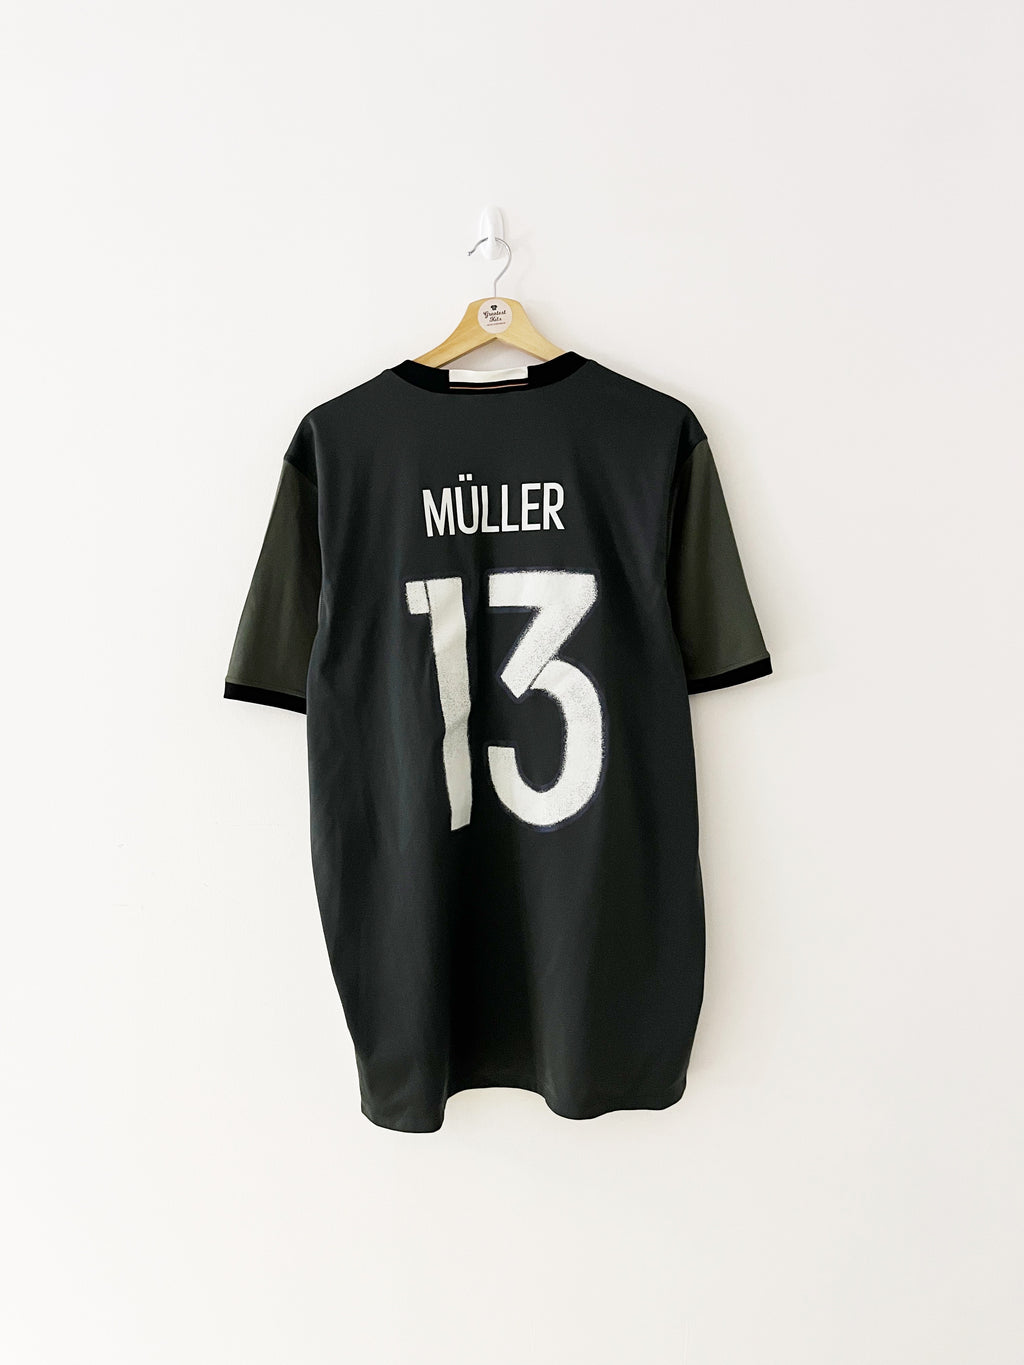 Maillot extérieur réversible Allemagne 2016/17 Muller #13 (XL) 9/10